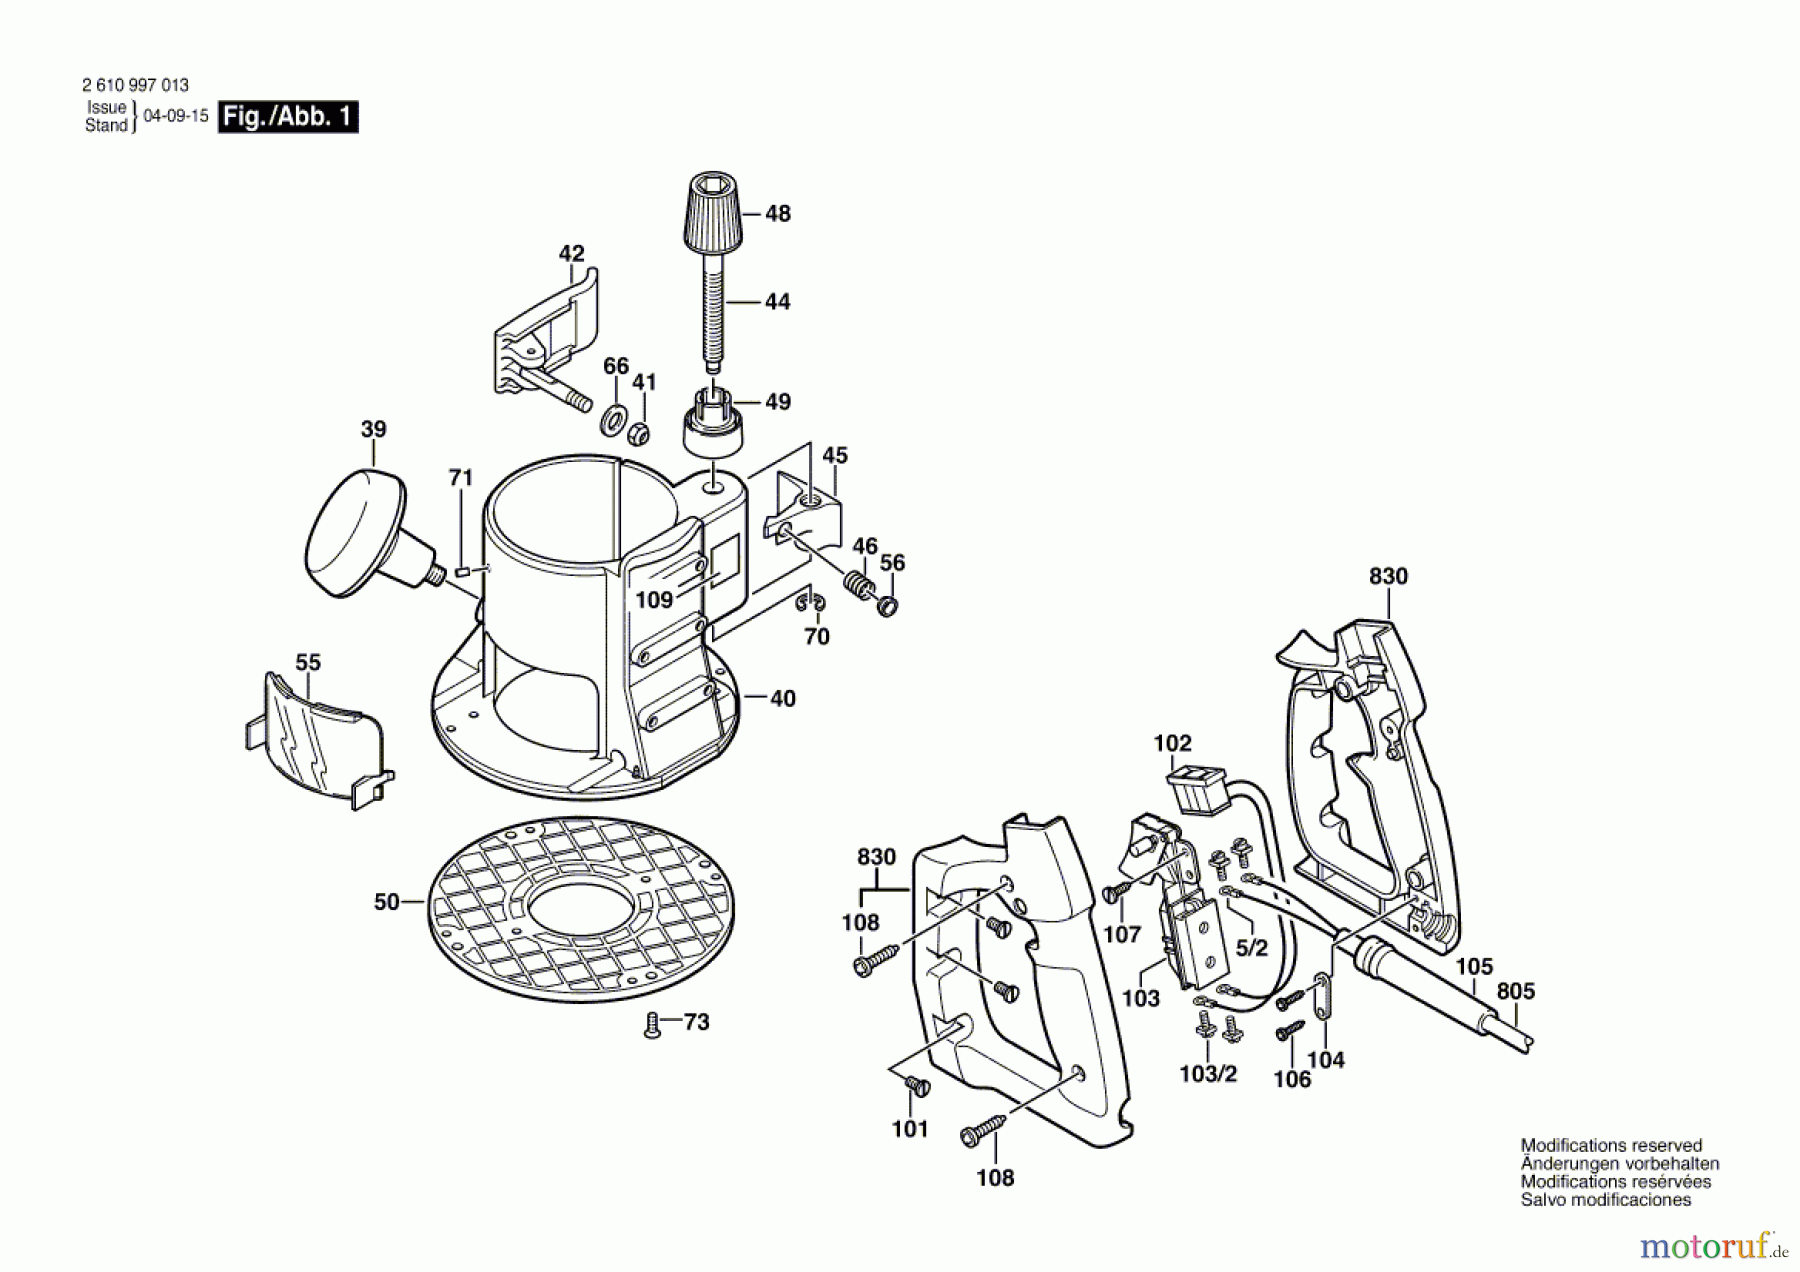  Bosch Werkzeug Montagesockel RA1162 Seite 1